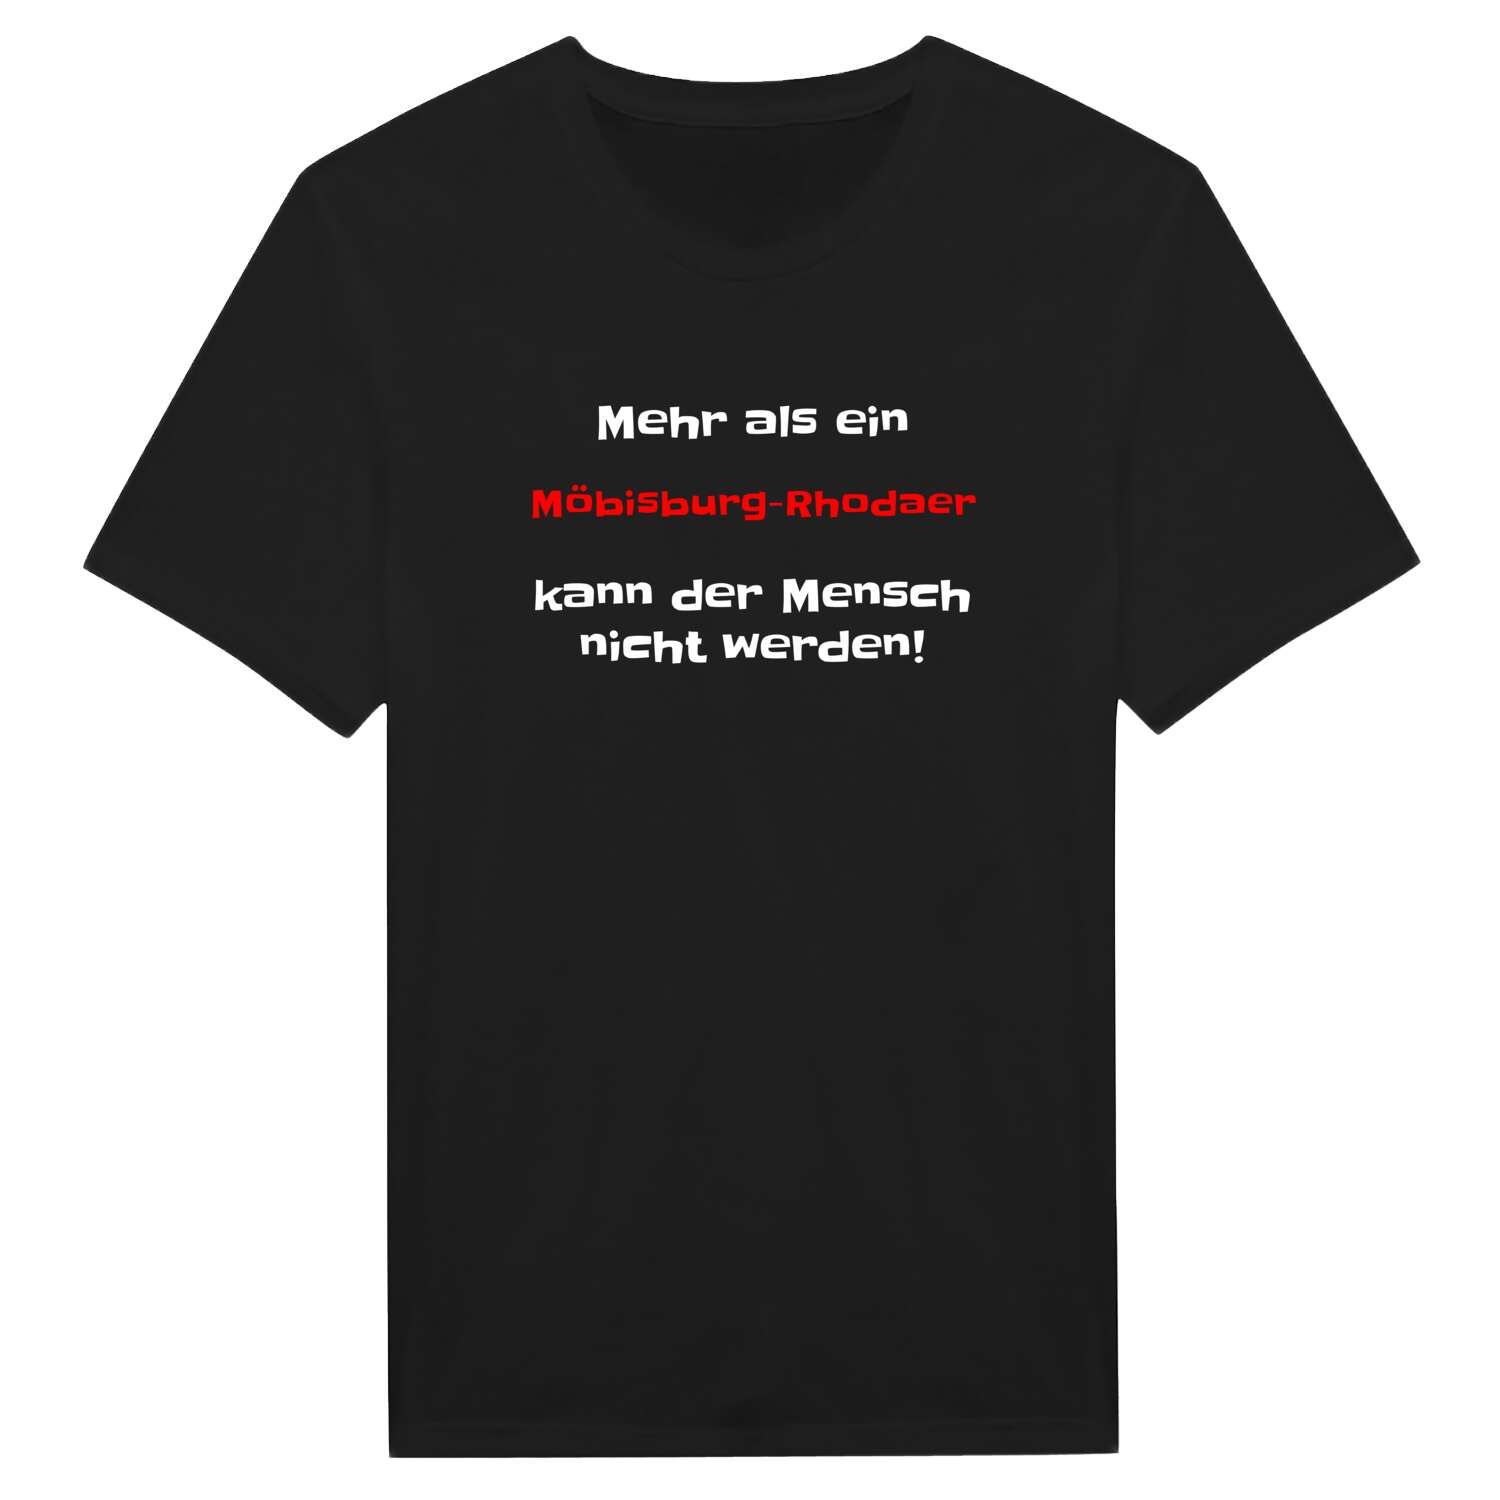 Möbisburg-Rhoda T-Shirt »Mehr als ein«